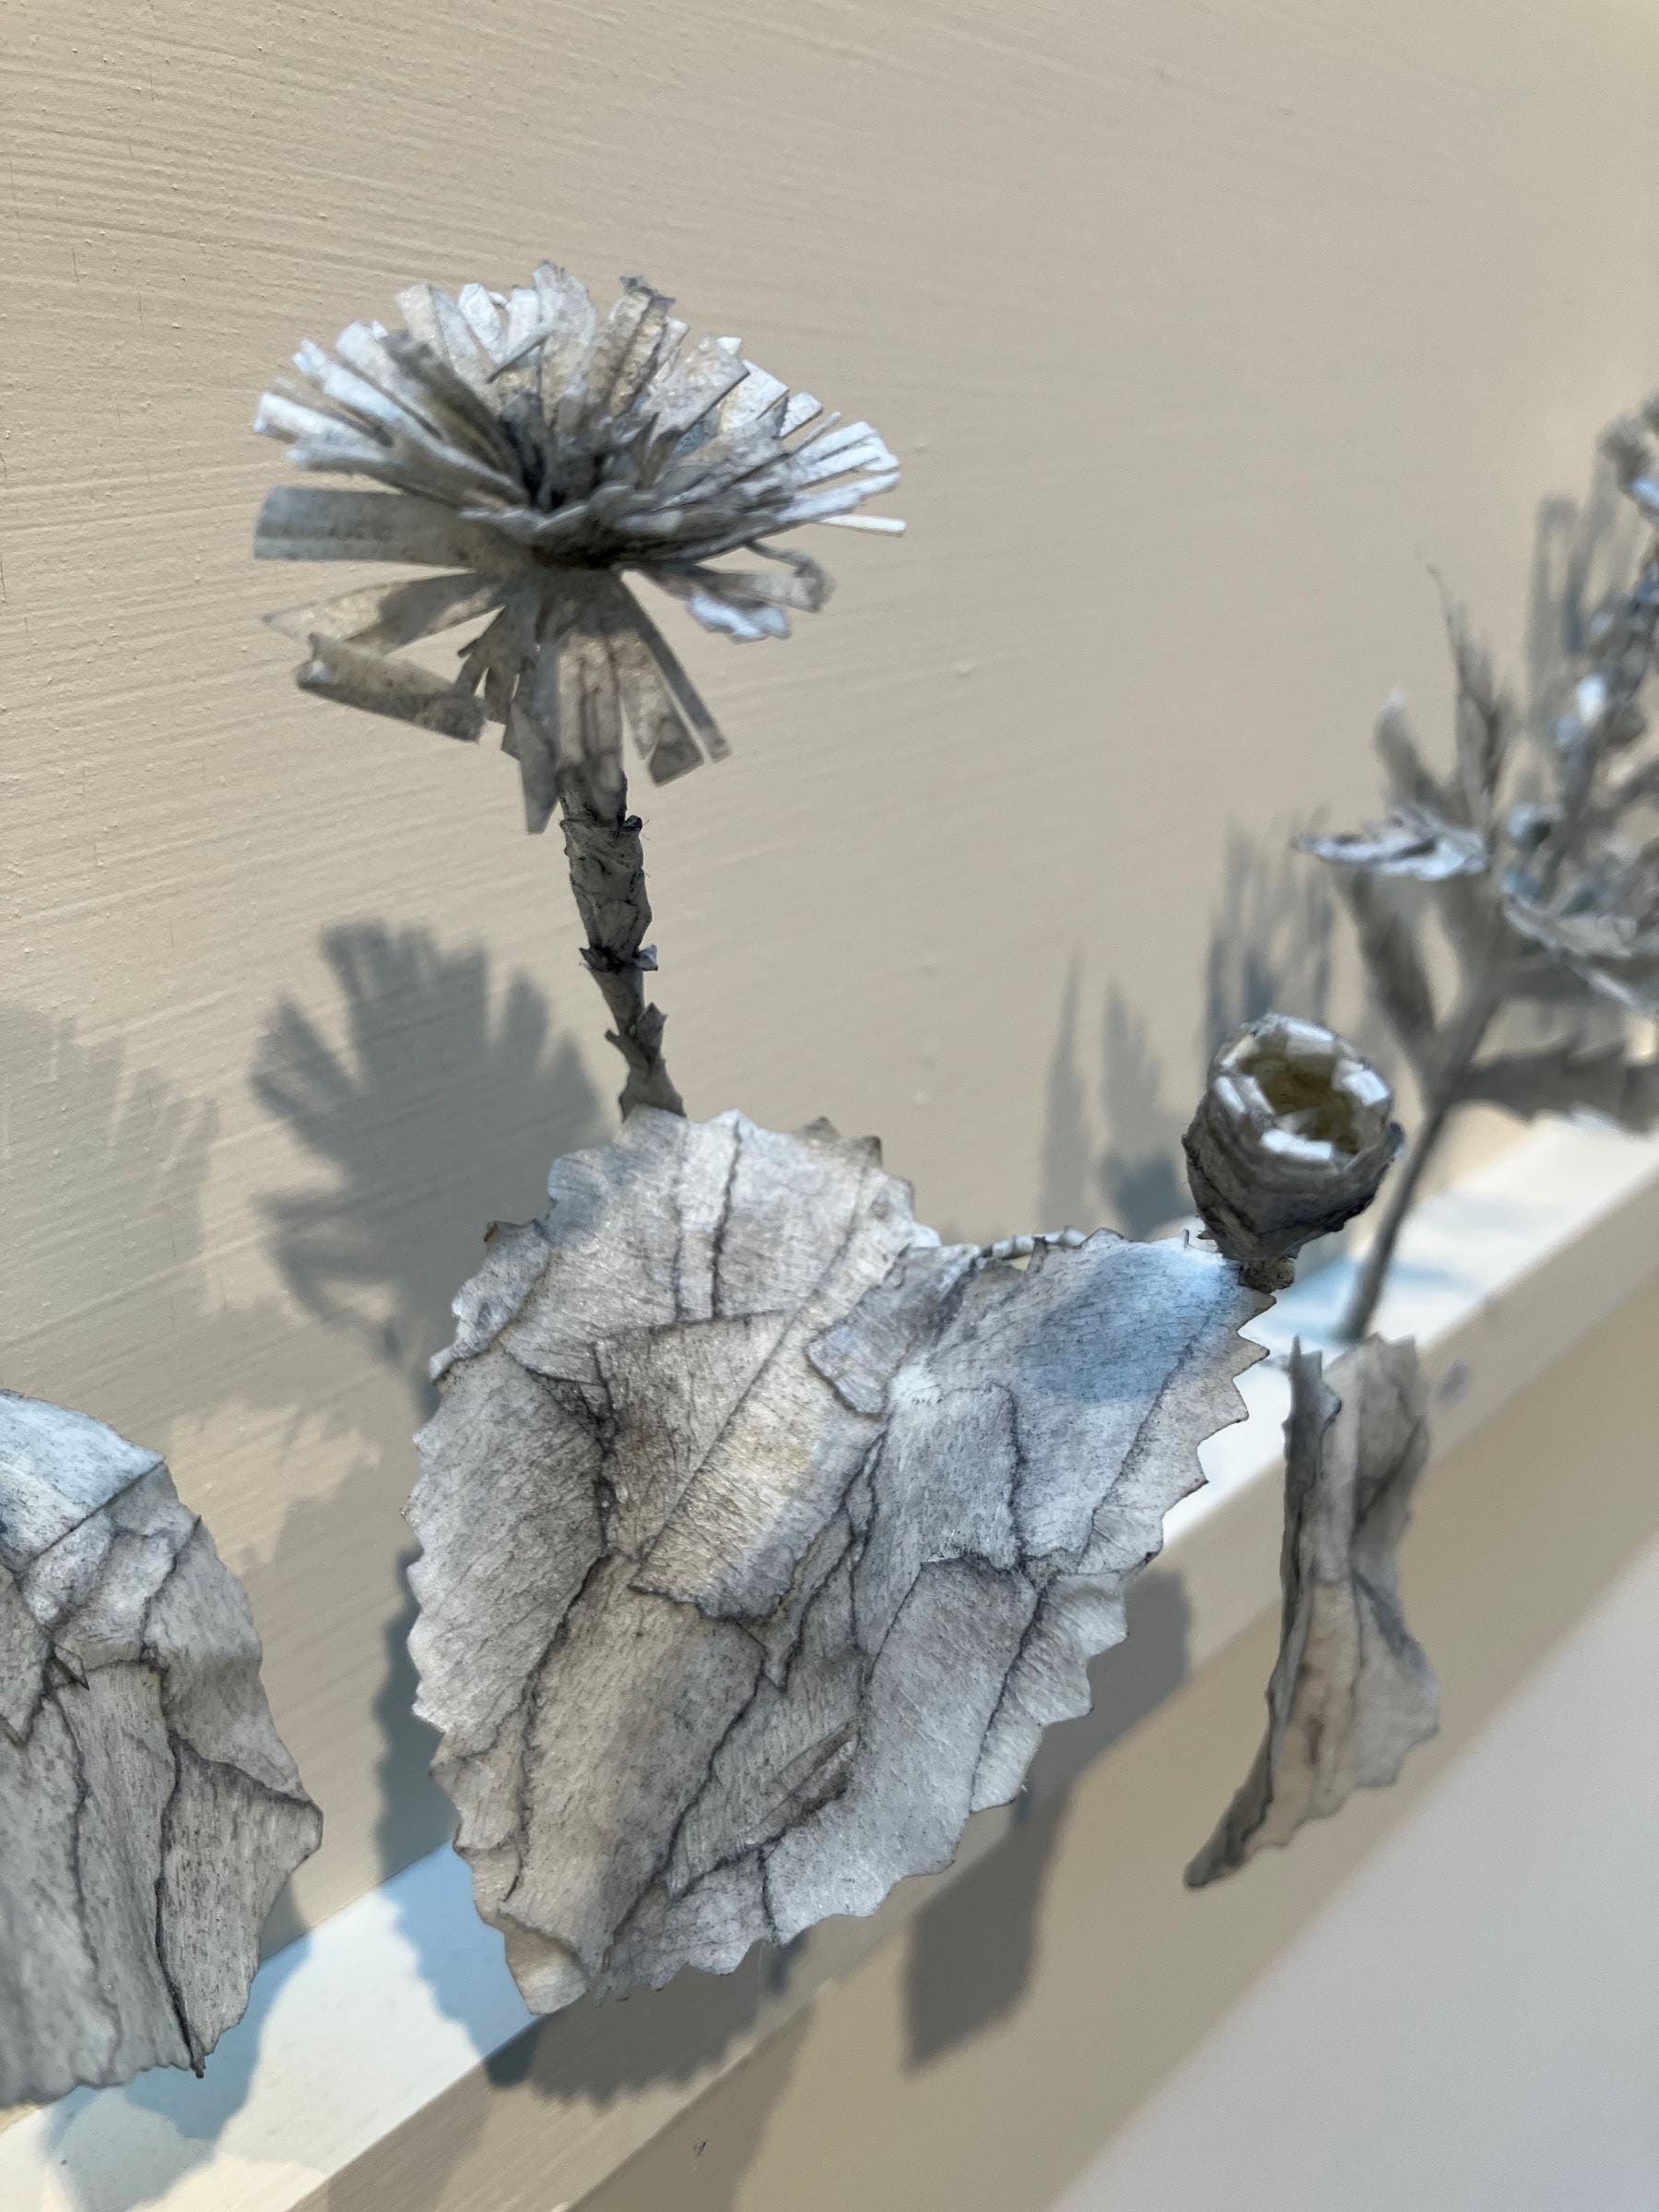 A small grey flower sculpture